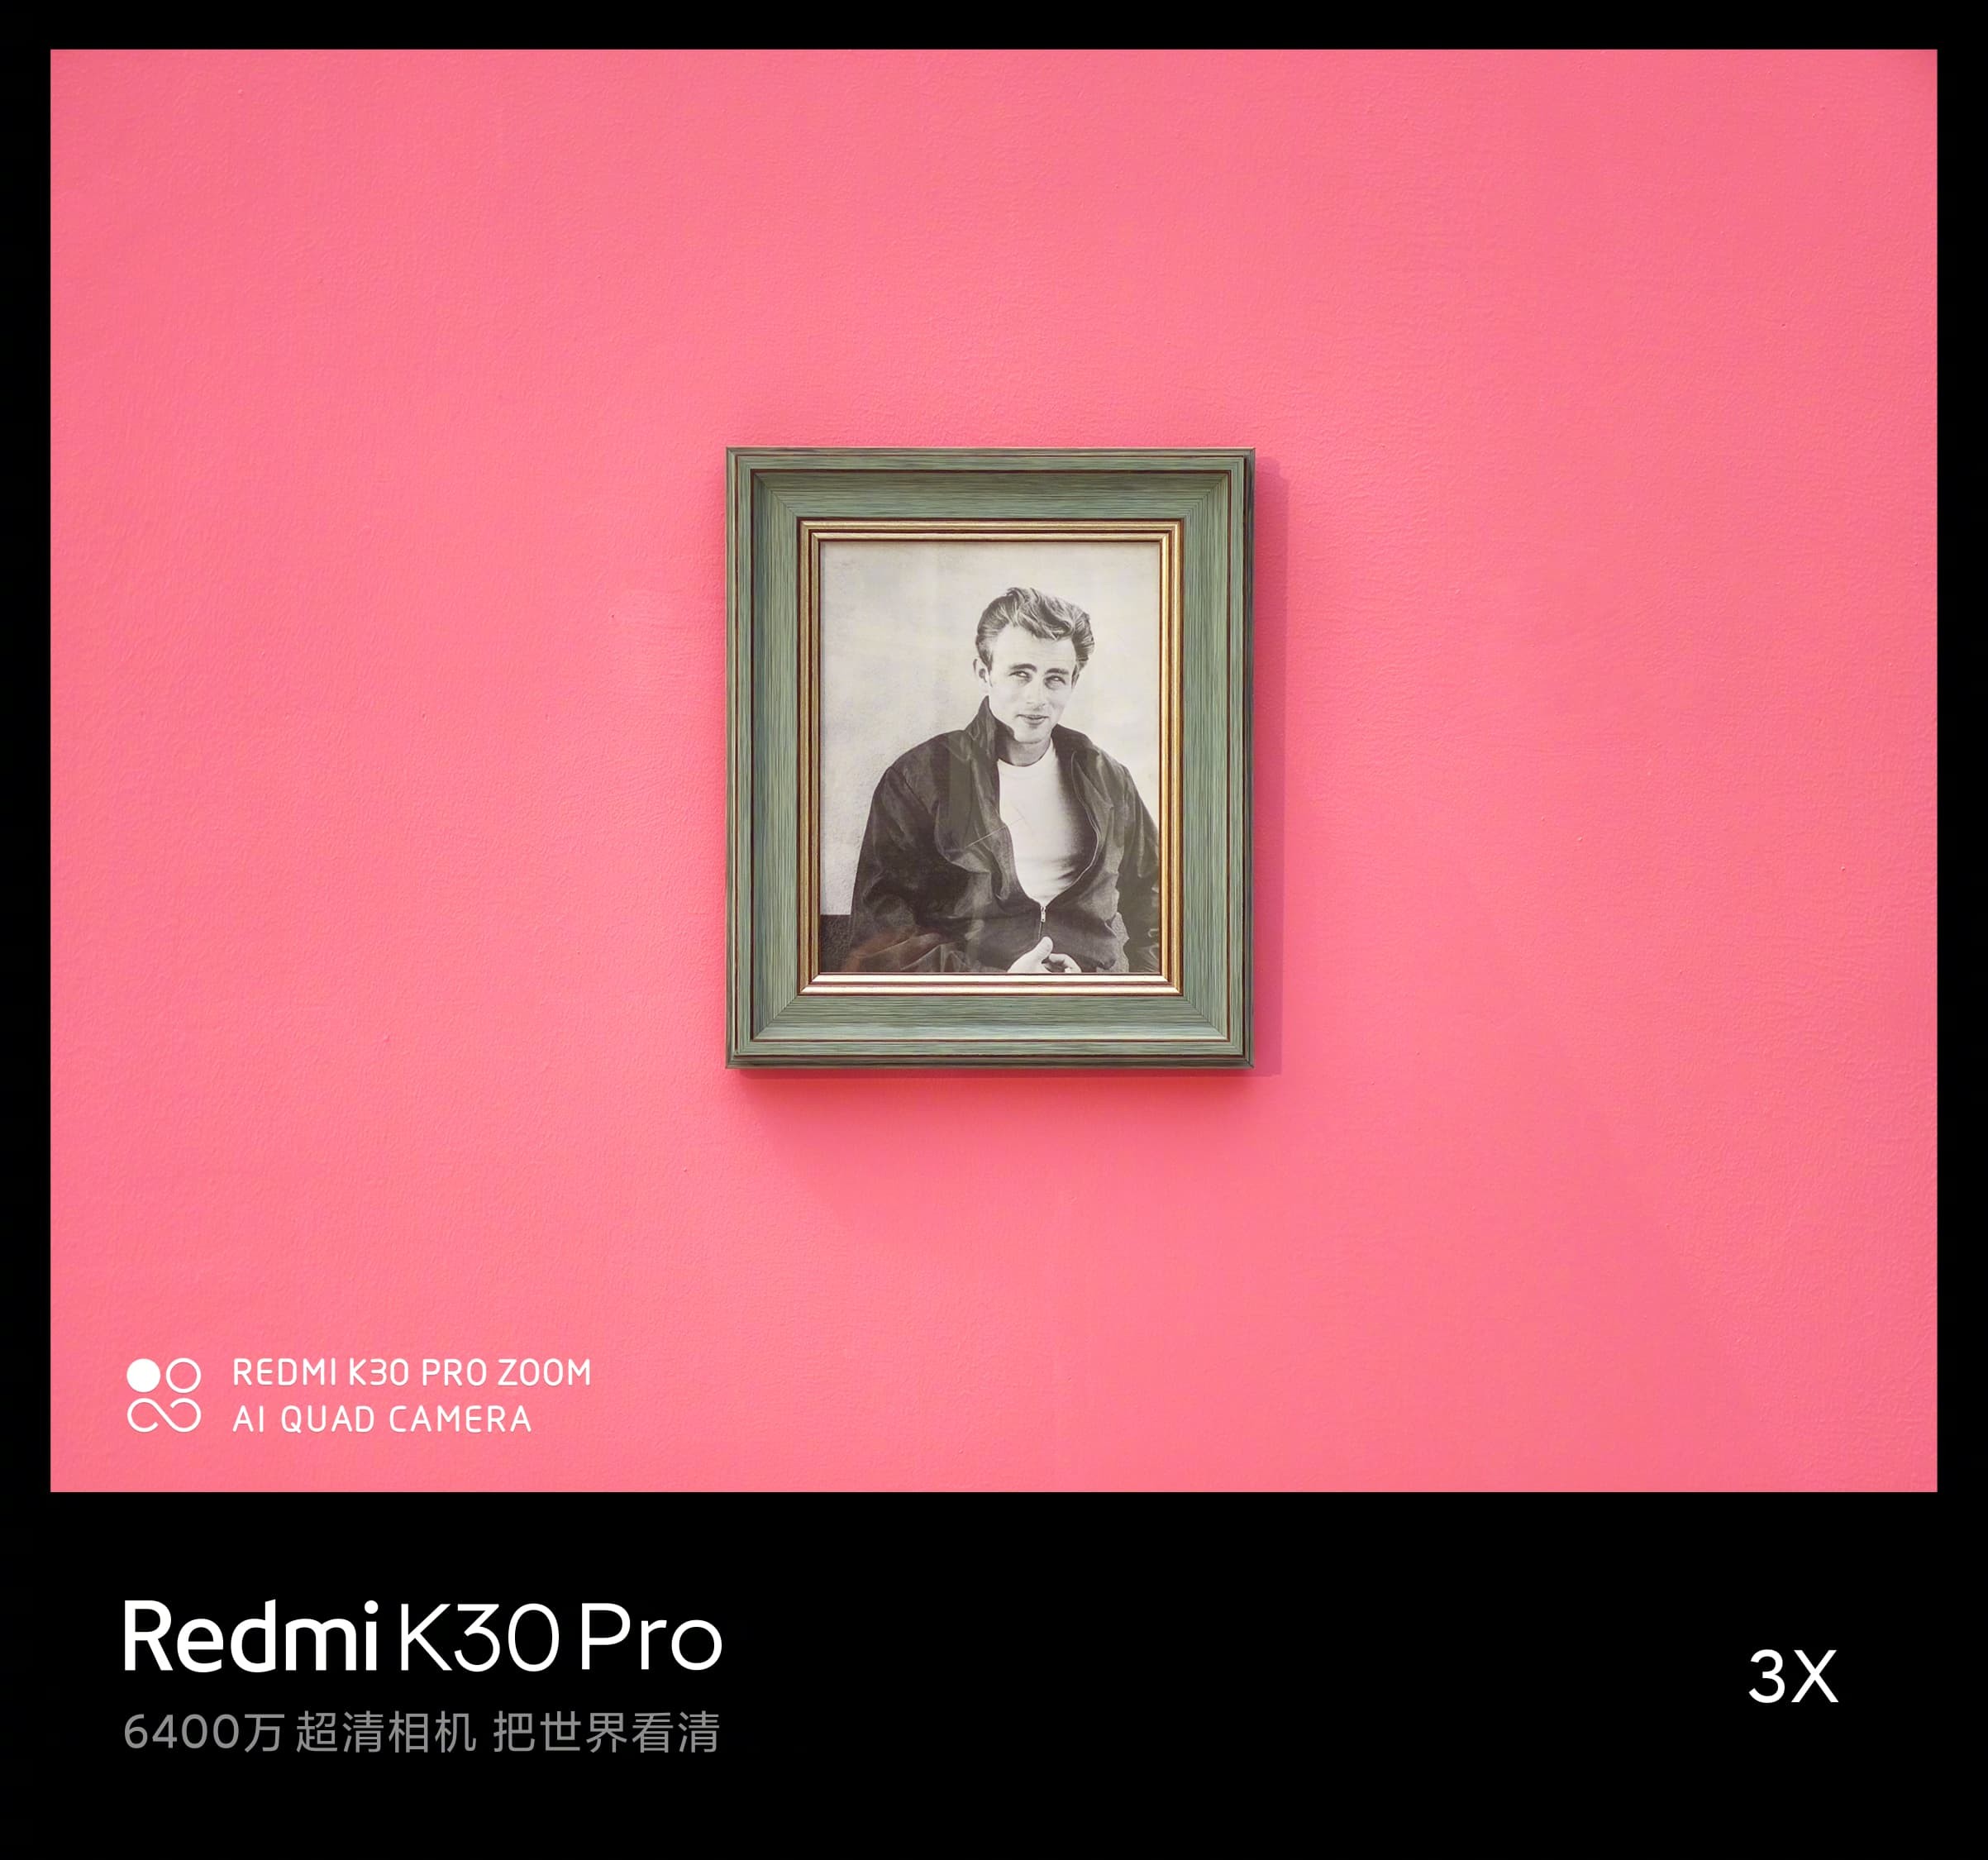 Kamera Redmi K30 Pro